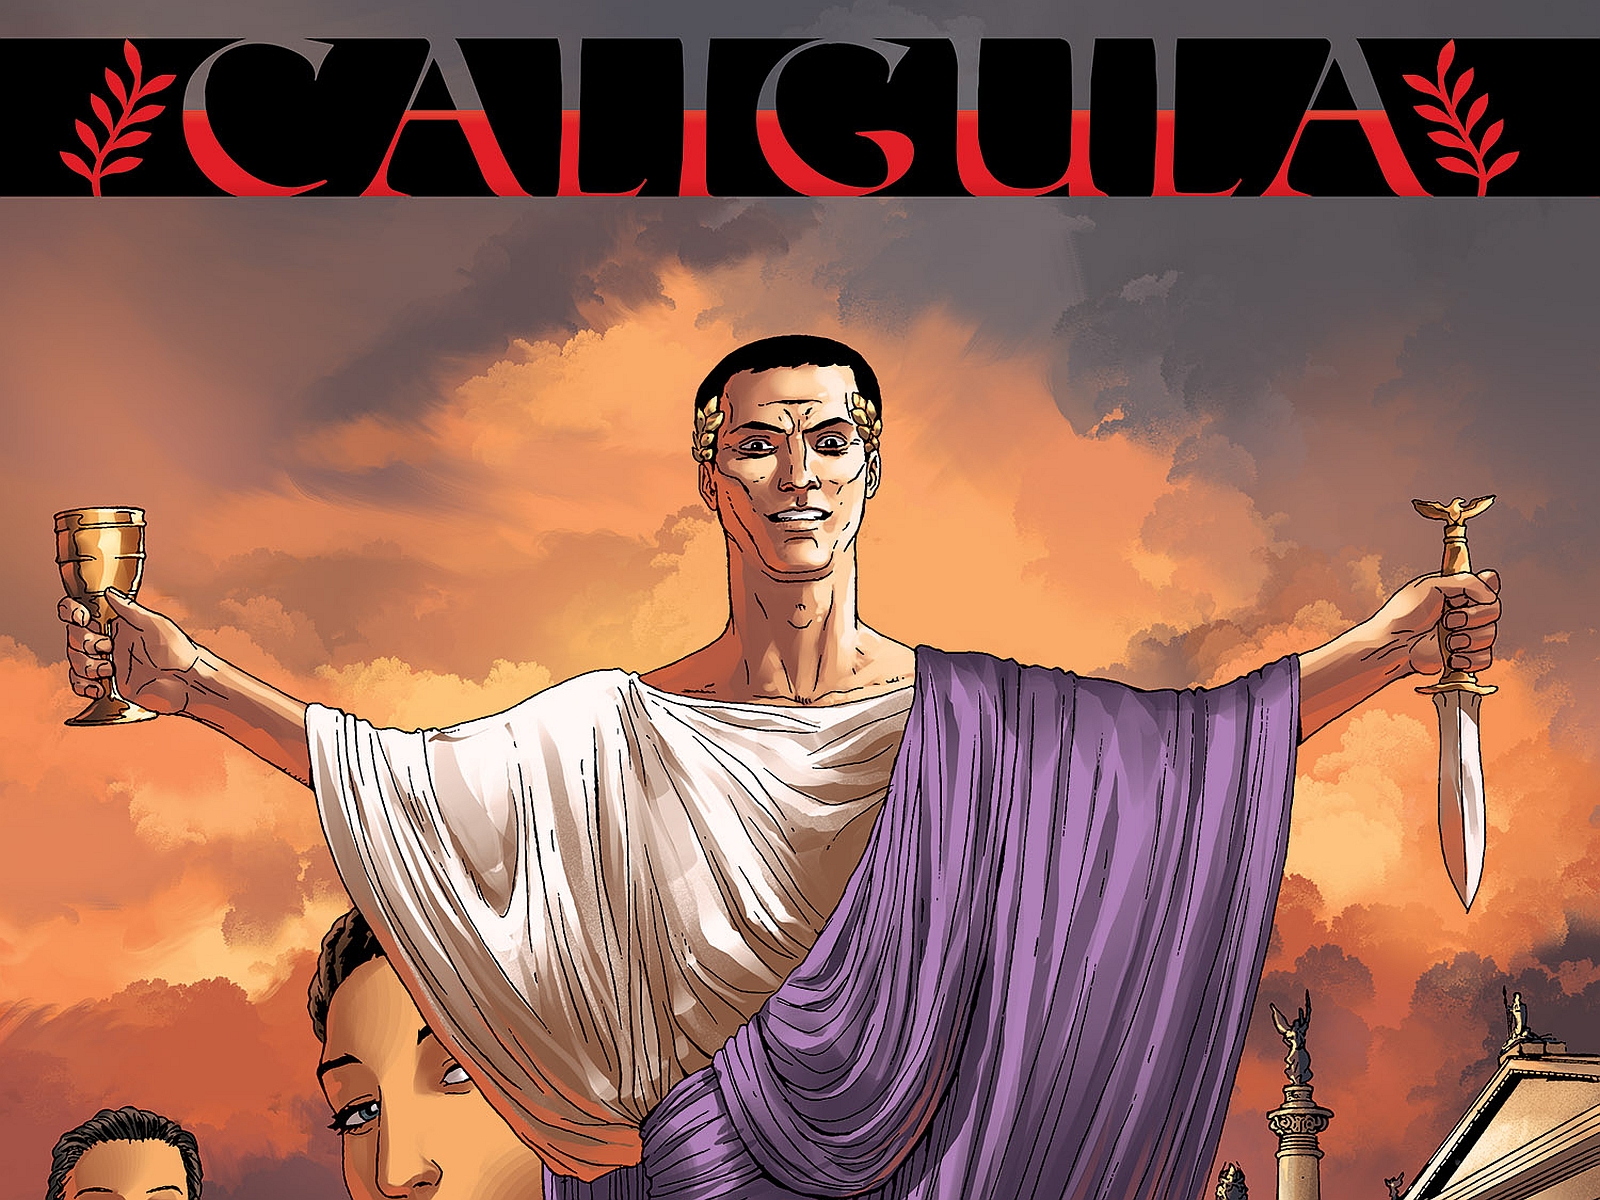 Калигула